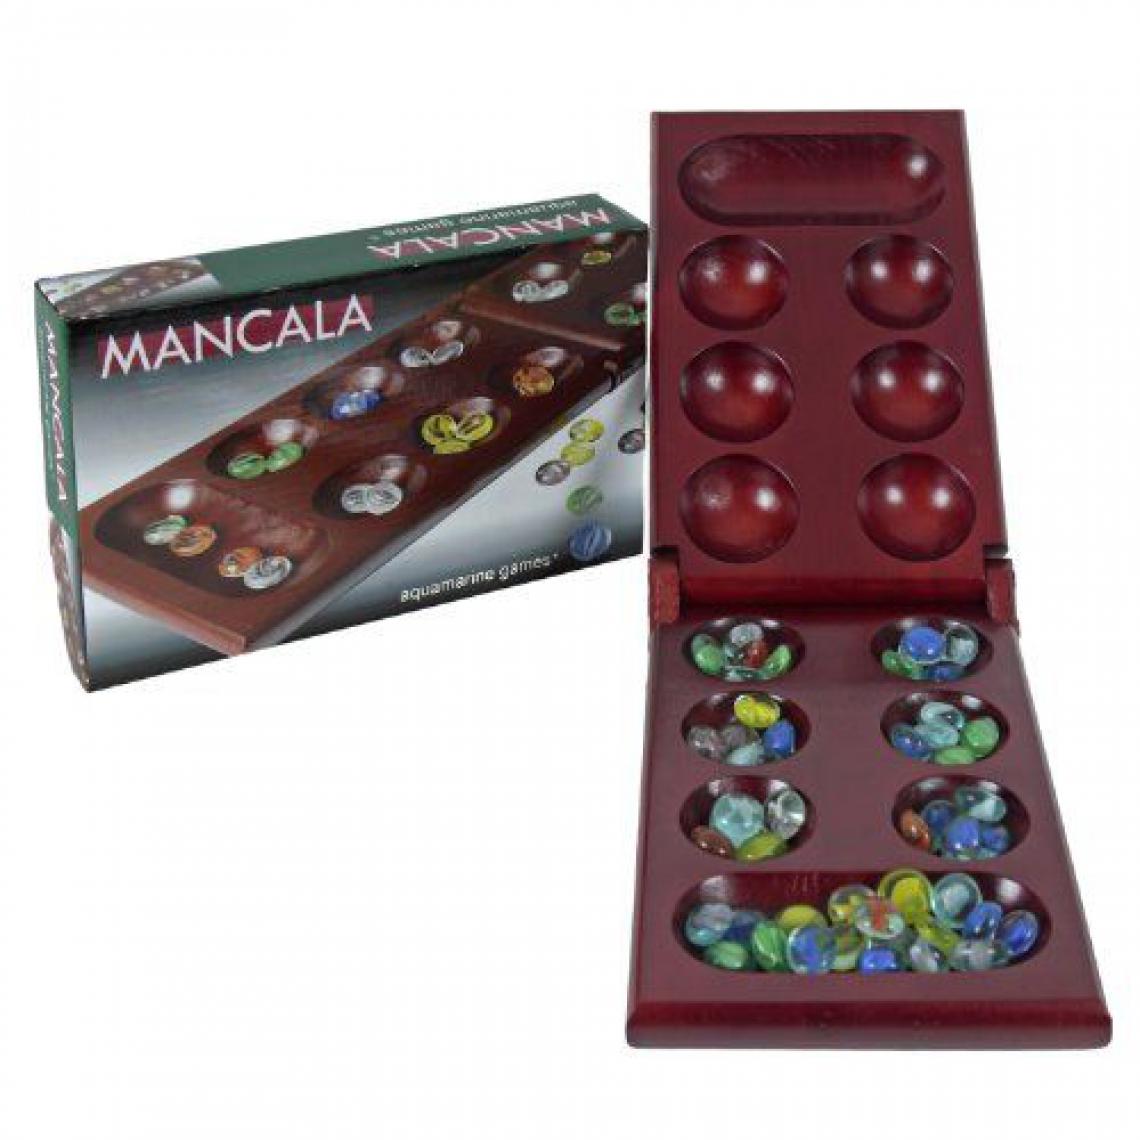 Inconnu - Aquamarine Games – Mancala, Jeu D'adresse (compudid fd100445) - Les grands classiques